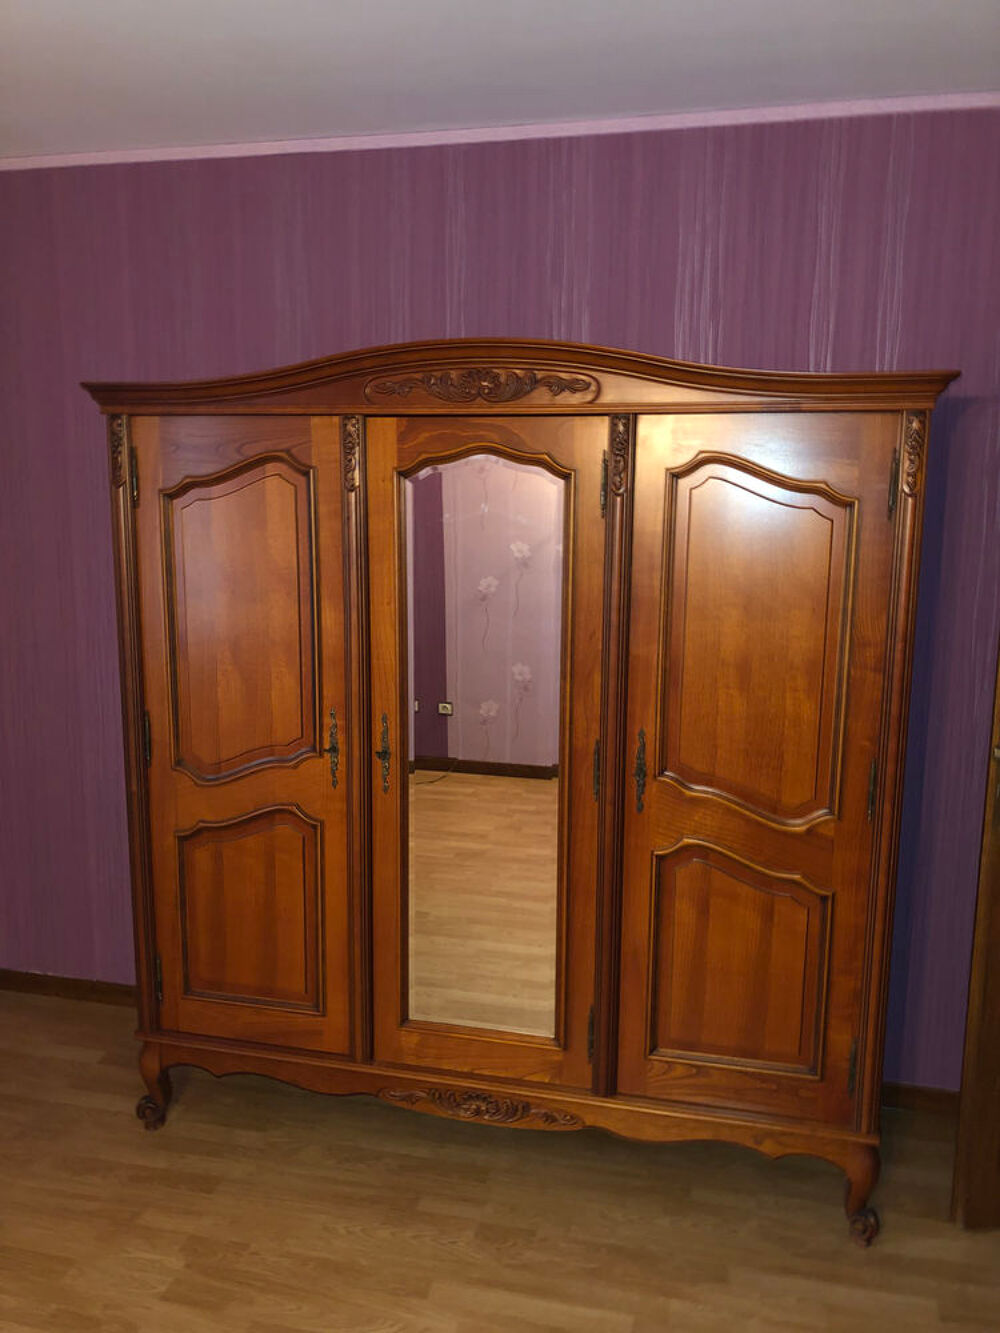 Tr&egrave;s belle armoire merisier, en bois massif 3 portes Meubles